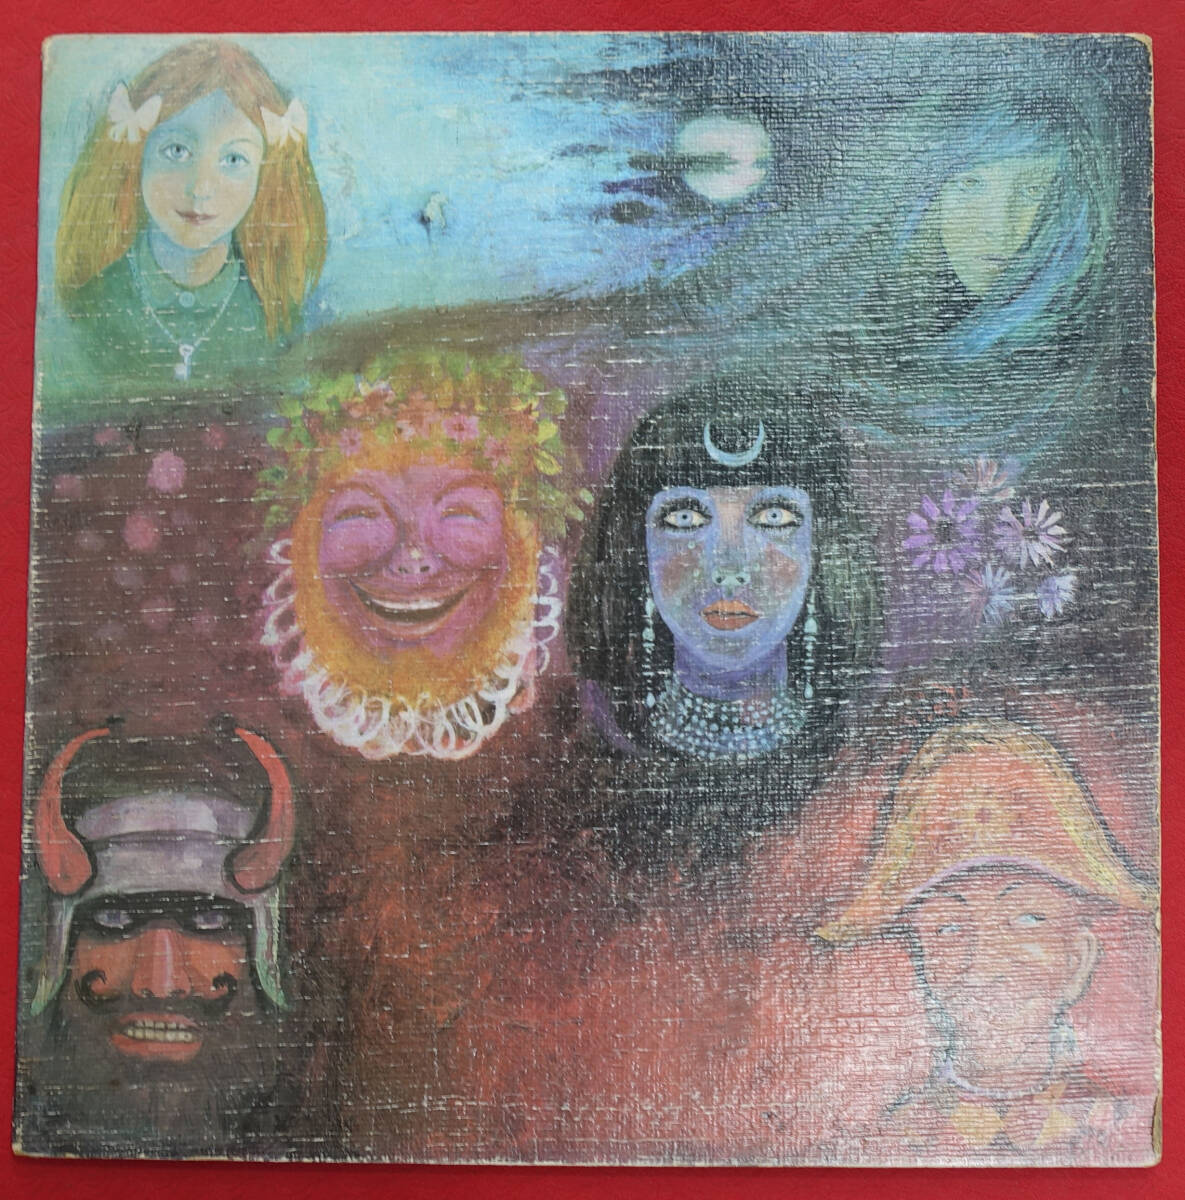 極美! UK Original 初回 ISLAND ILPS -9127 In the Wake of Poseidon / King Crimson MAT: A1/B1の画像1